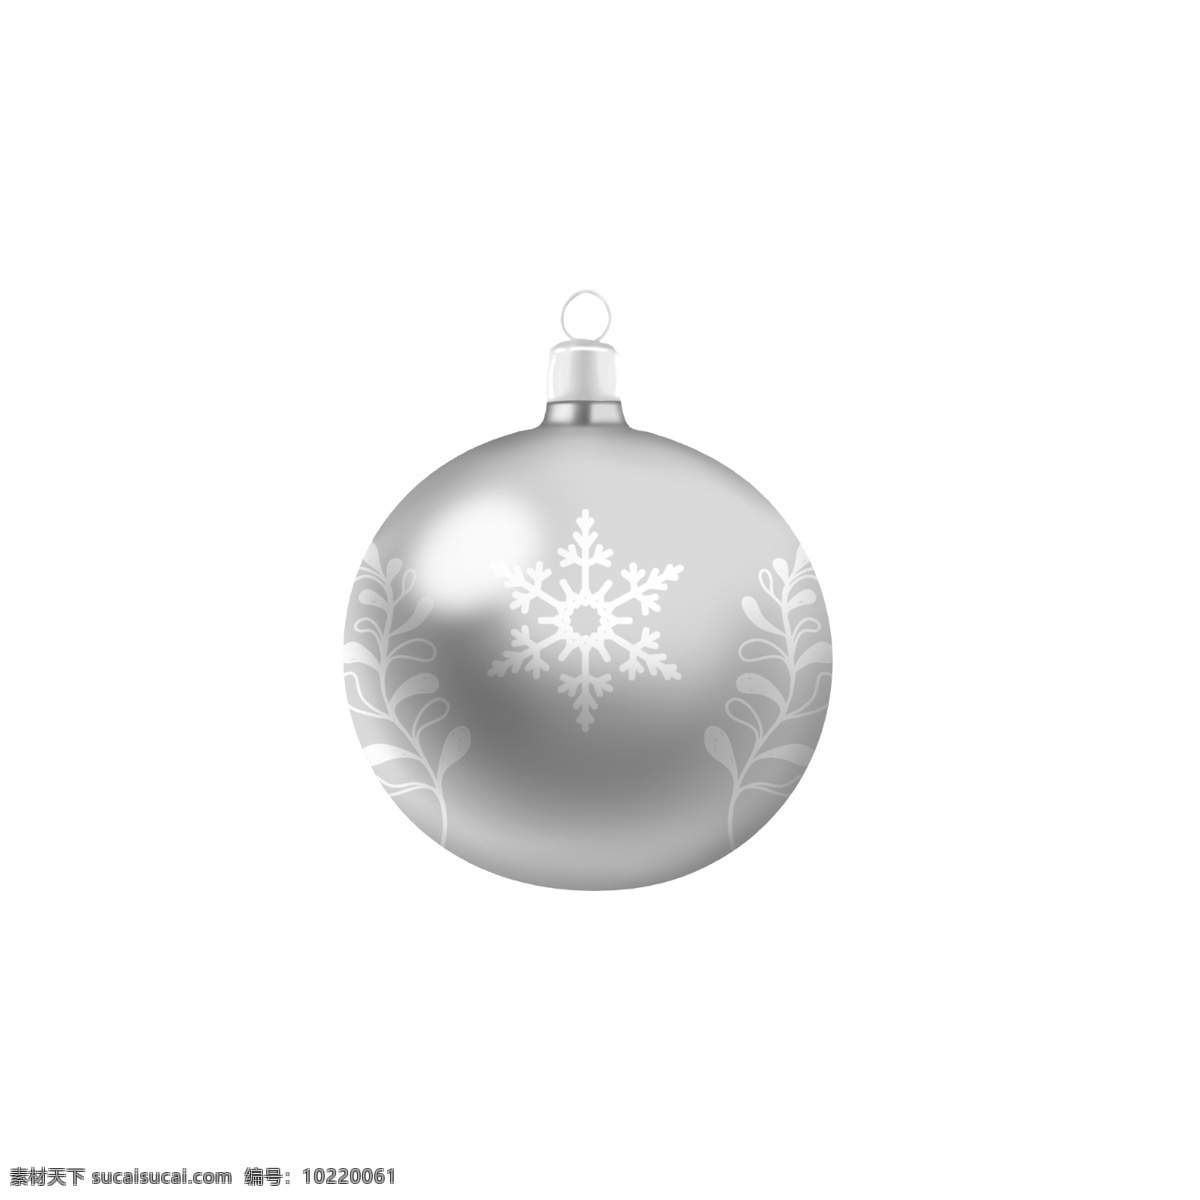 手绘 圣诞 装饰 球 银色 白色 雪花 小草 创意 商用 圣诞节 植物 可爱 手绘风 平安夜 草 写实 配图 可商用